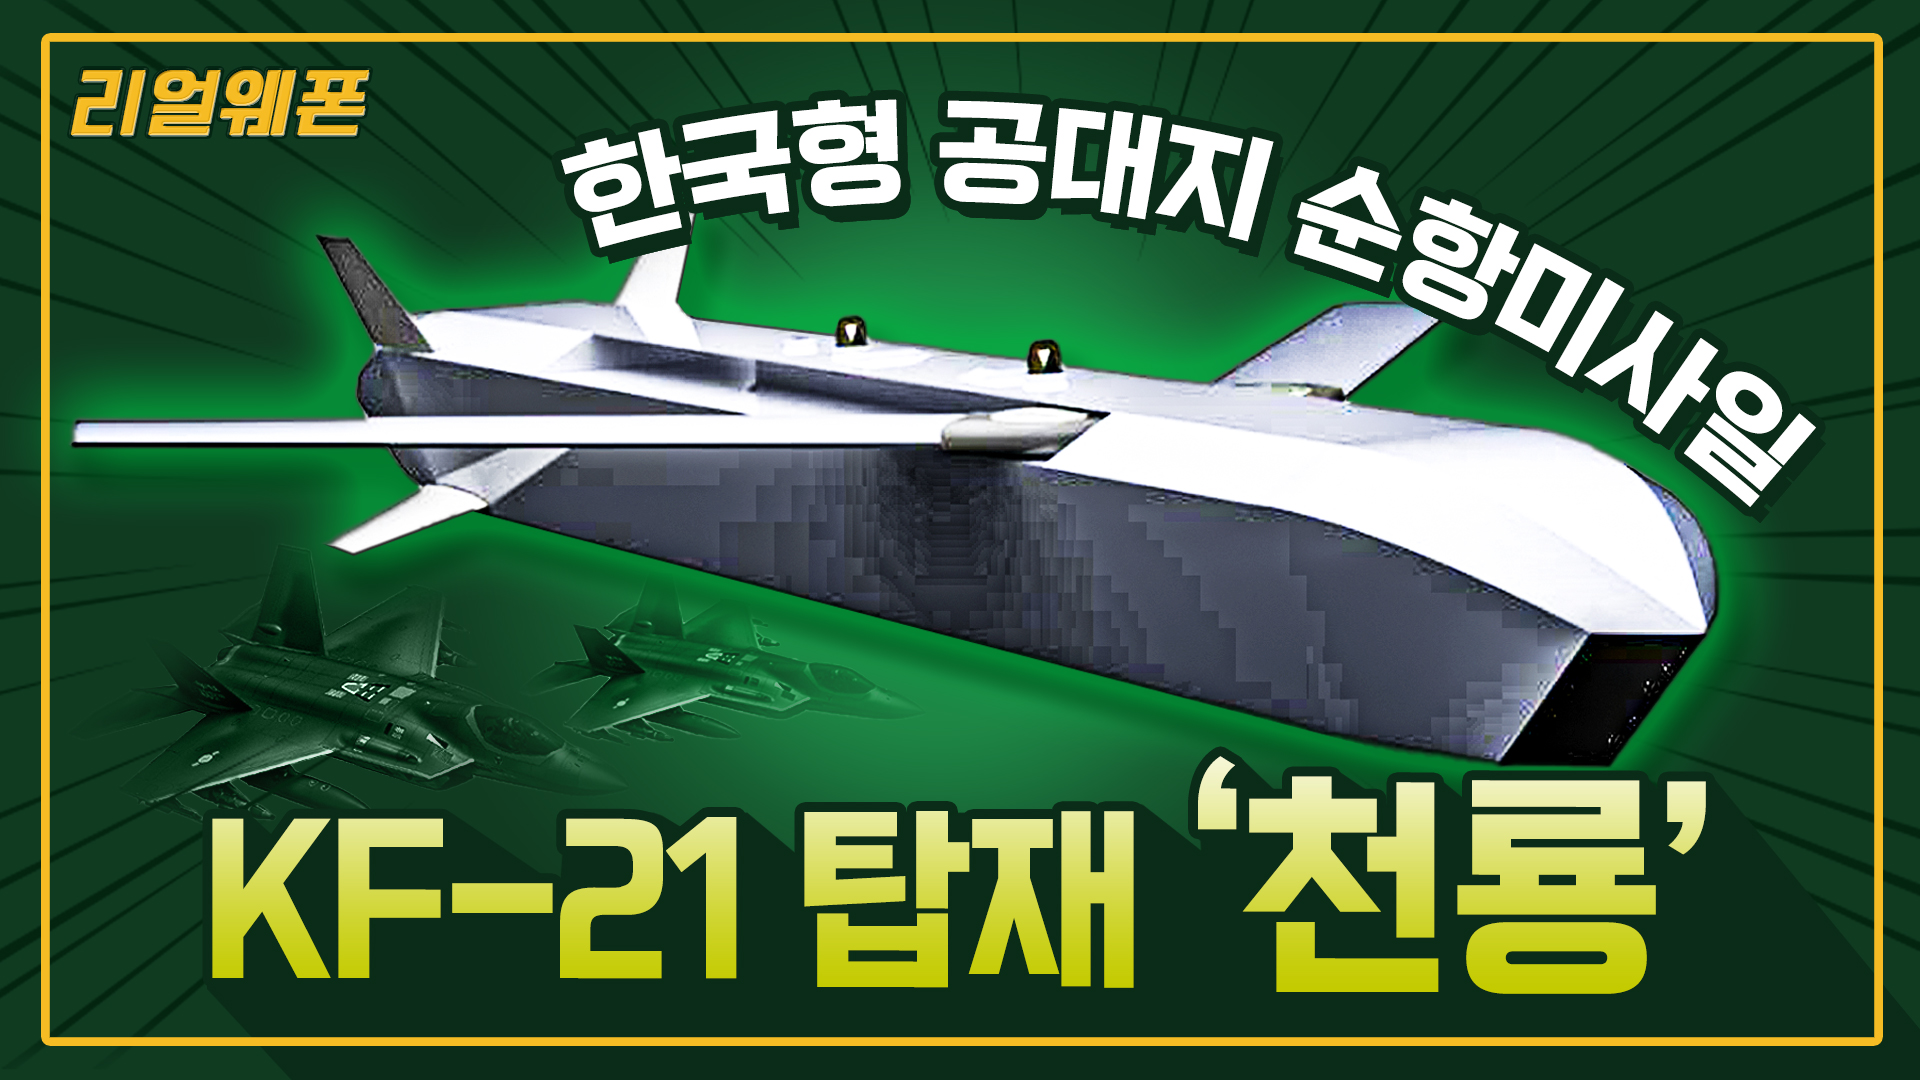 북핵· 탄도미사일 걱정 끝!! ◇한국형 타우러스 ‘천룡’ ◆장거리 공대지 미사일 ☆리얼웨폰229